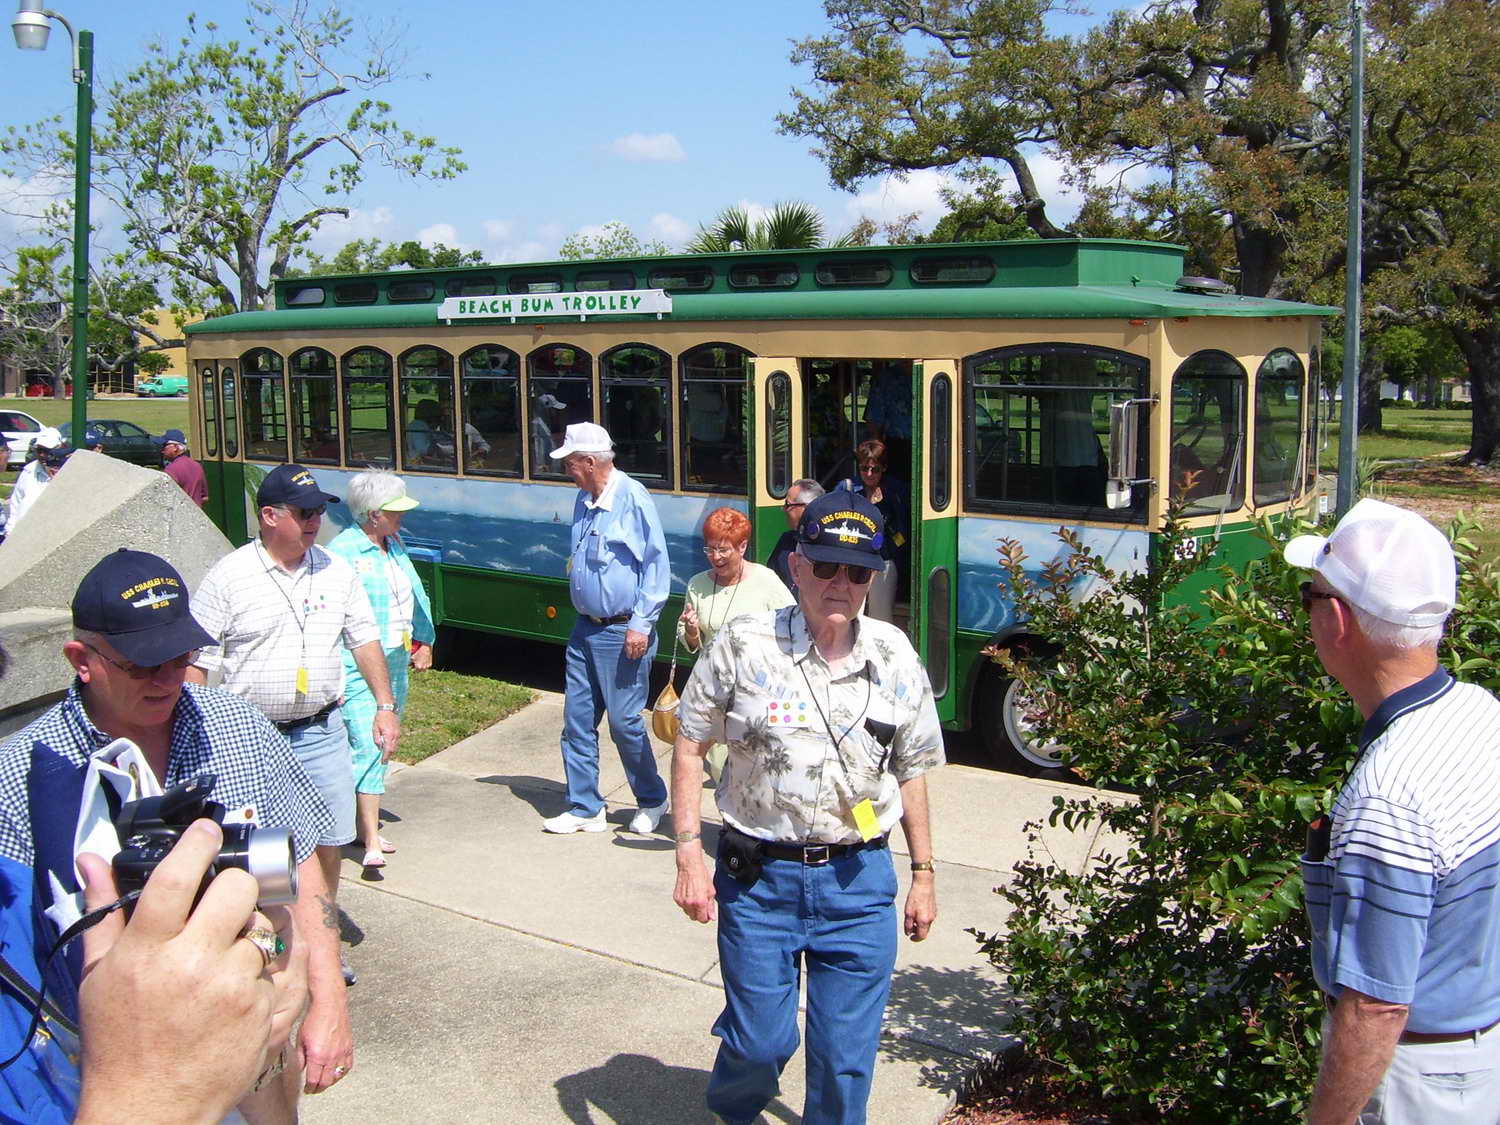 Trolley arriving at Veterans Memorial Park